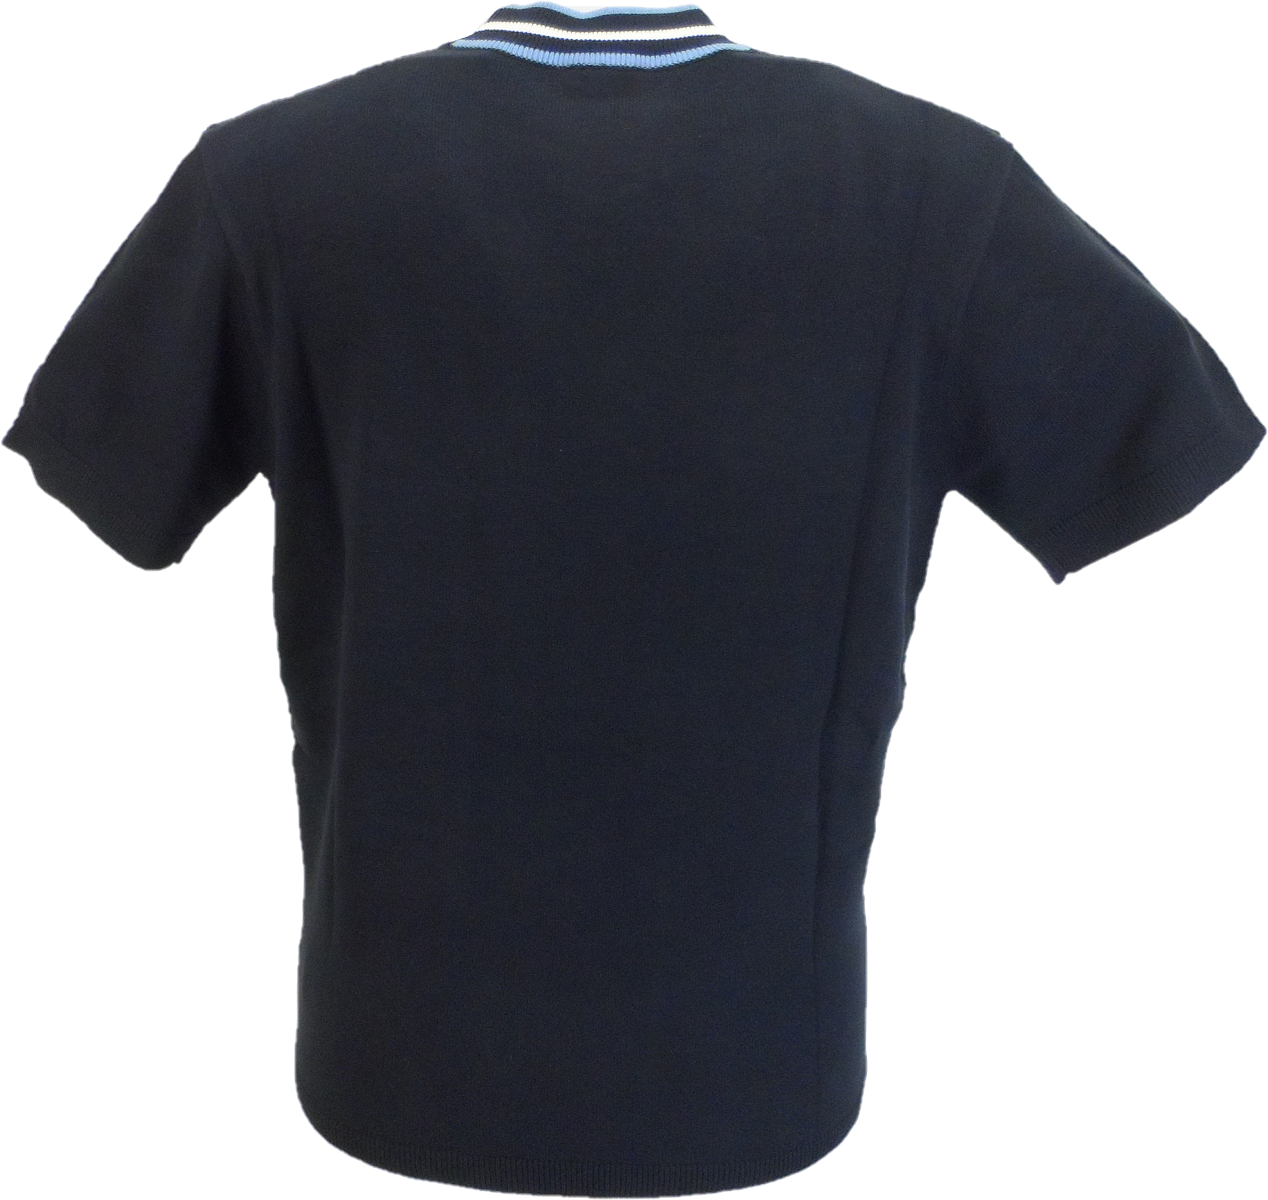 Gabicci Vintage jersey de hombre con cuello alto de fieltro azul marino